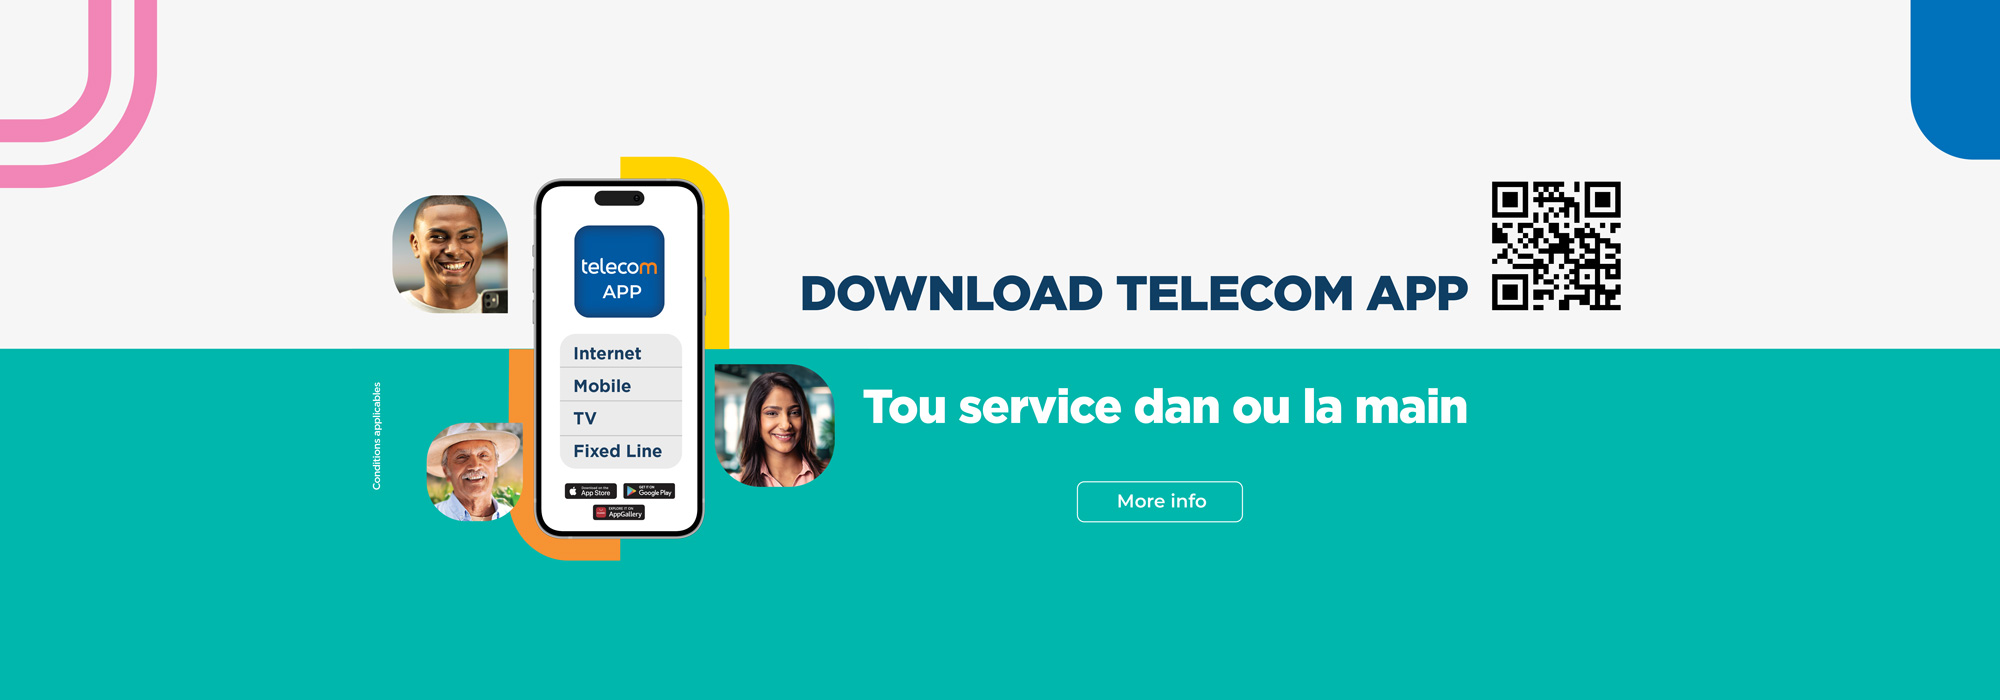 Telecom App